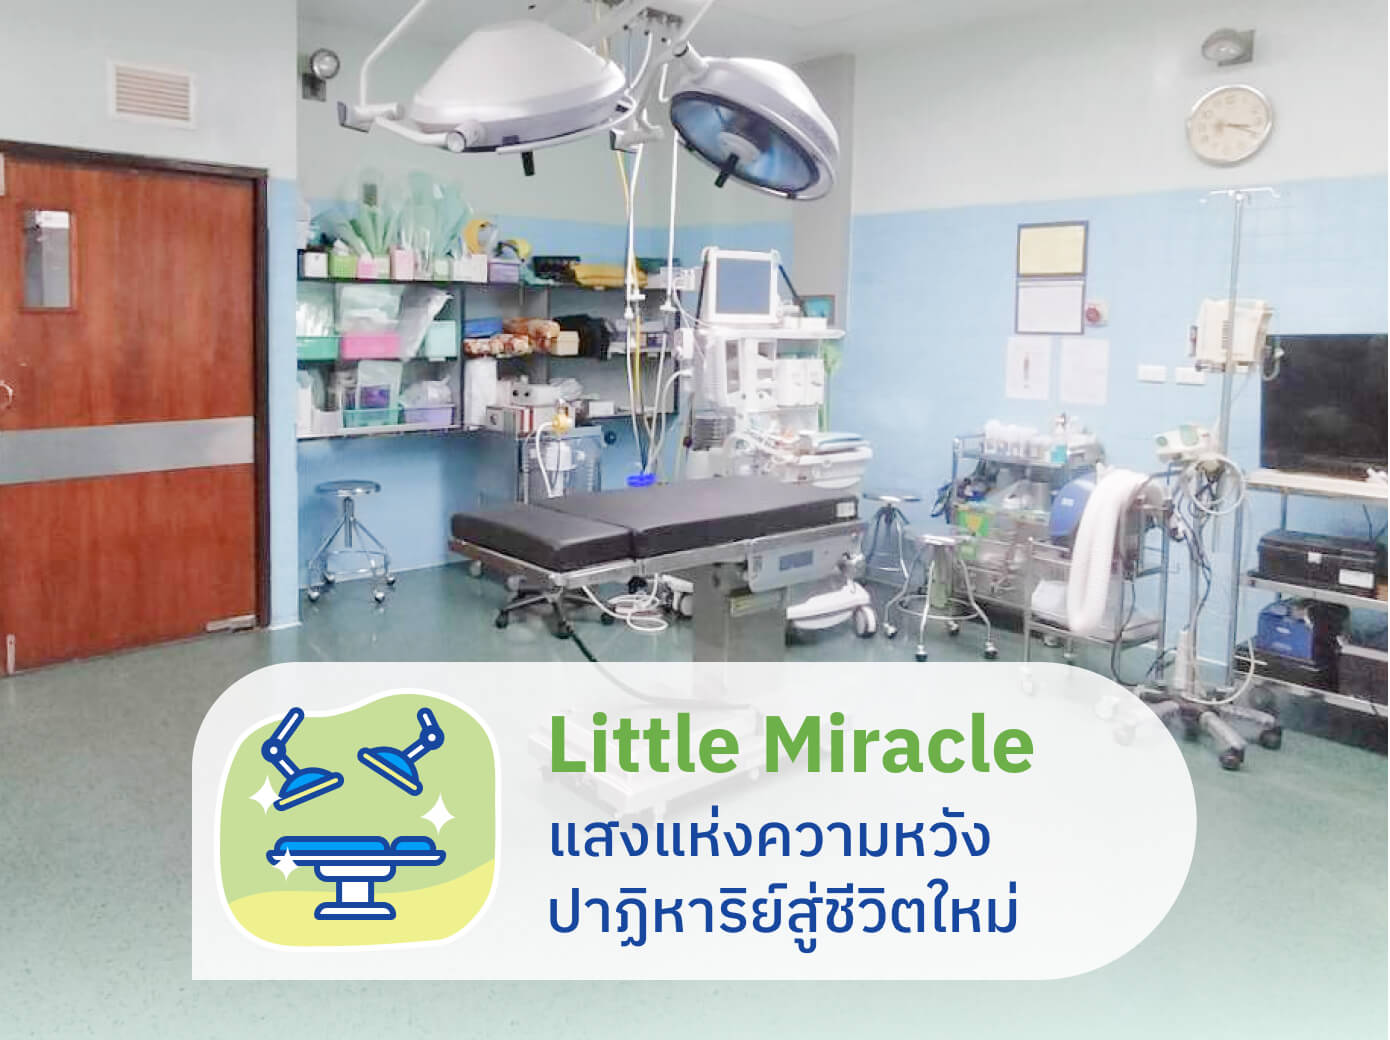 Little Miracle - ผ่าตัด ปาฏิหาริย์สู่ชีวิตใหม่